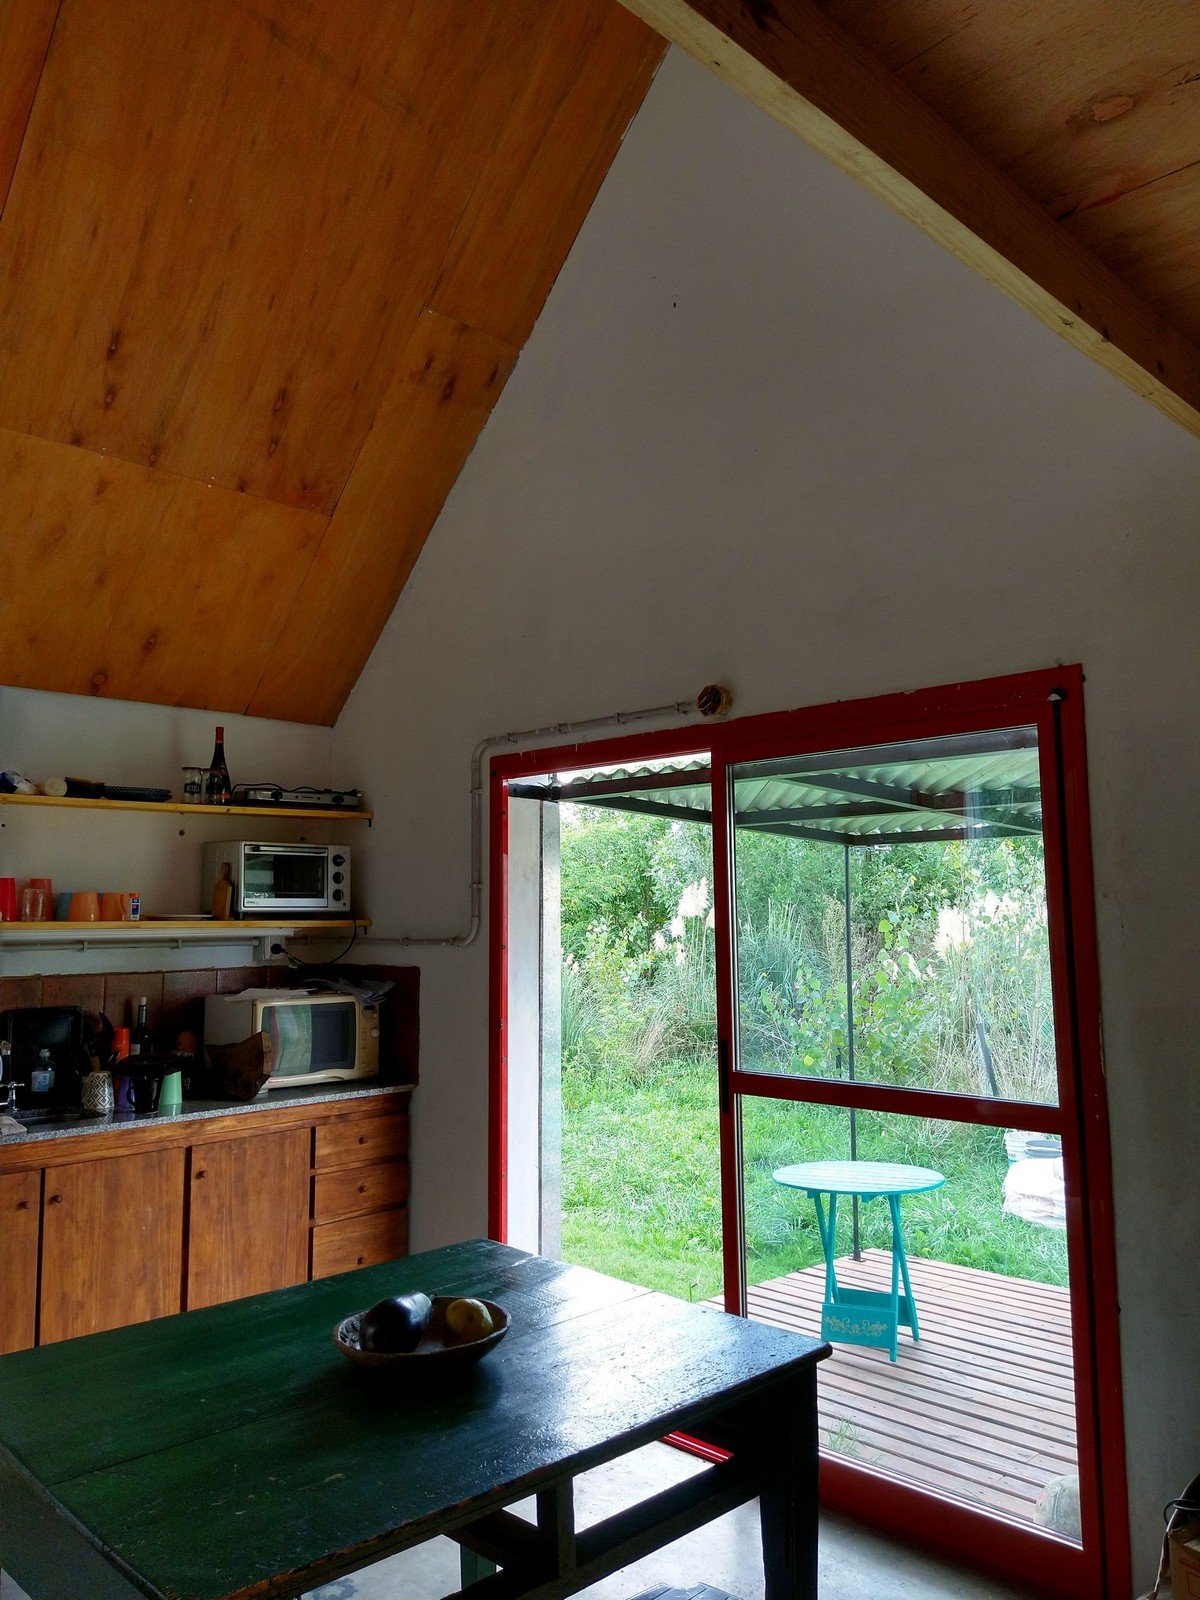 Небольшой двухуровневый домик в Аргентине которая, Проект, ландшафт, домик, домика, пространство, обеспечивает, крышей, интерьер, используется, дождевую, орошения, используемый, резервуар, закрытый, направляет, колодца, бытовых, крыши, собирает